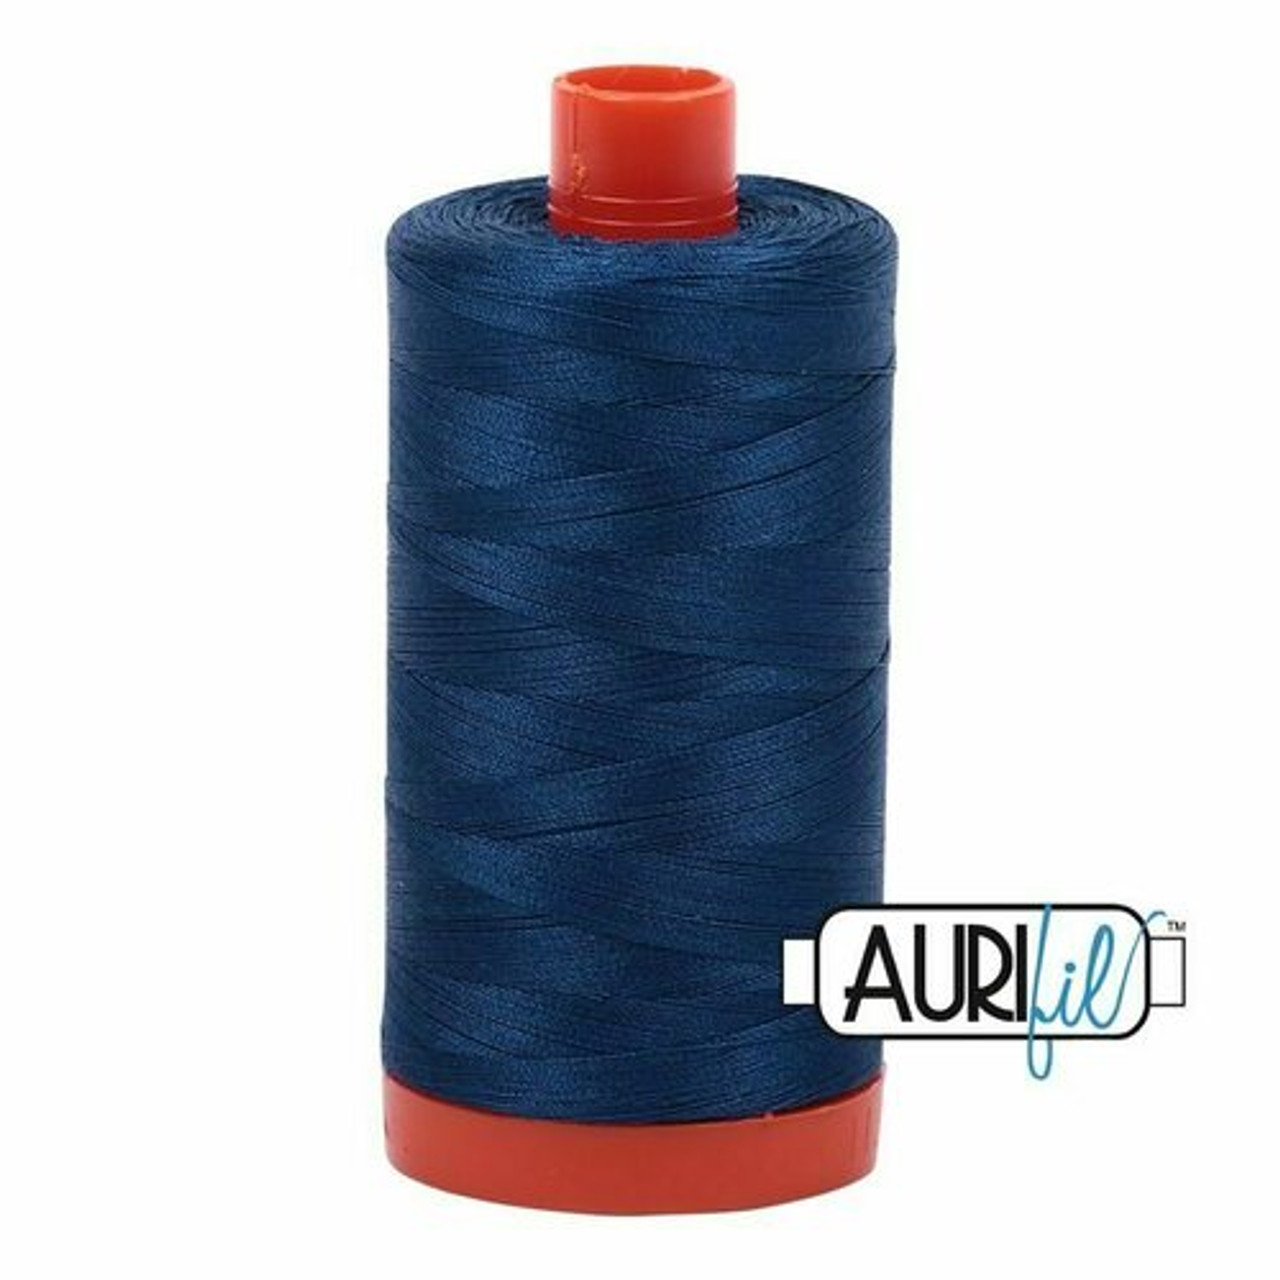 Aurifil 2783 - Medium Delft Blue